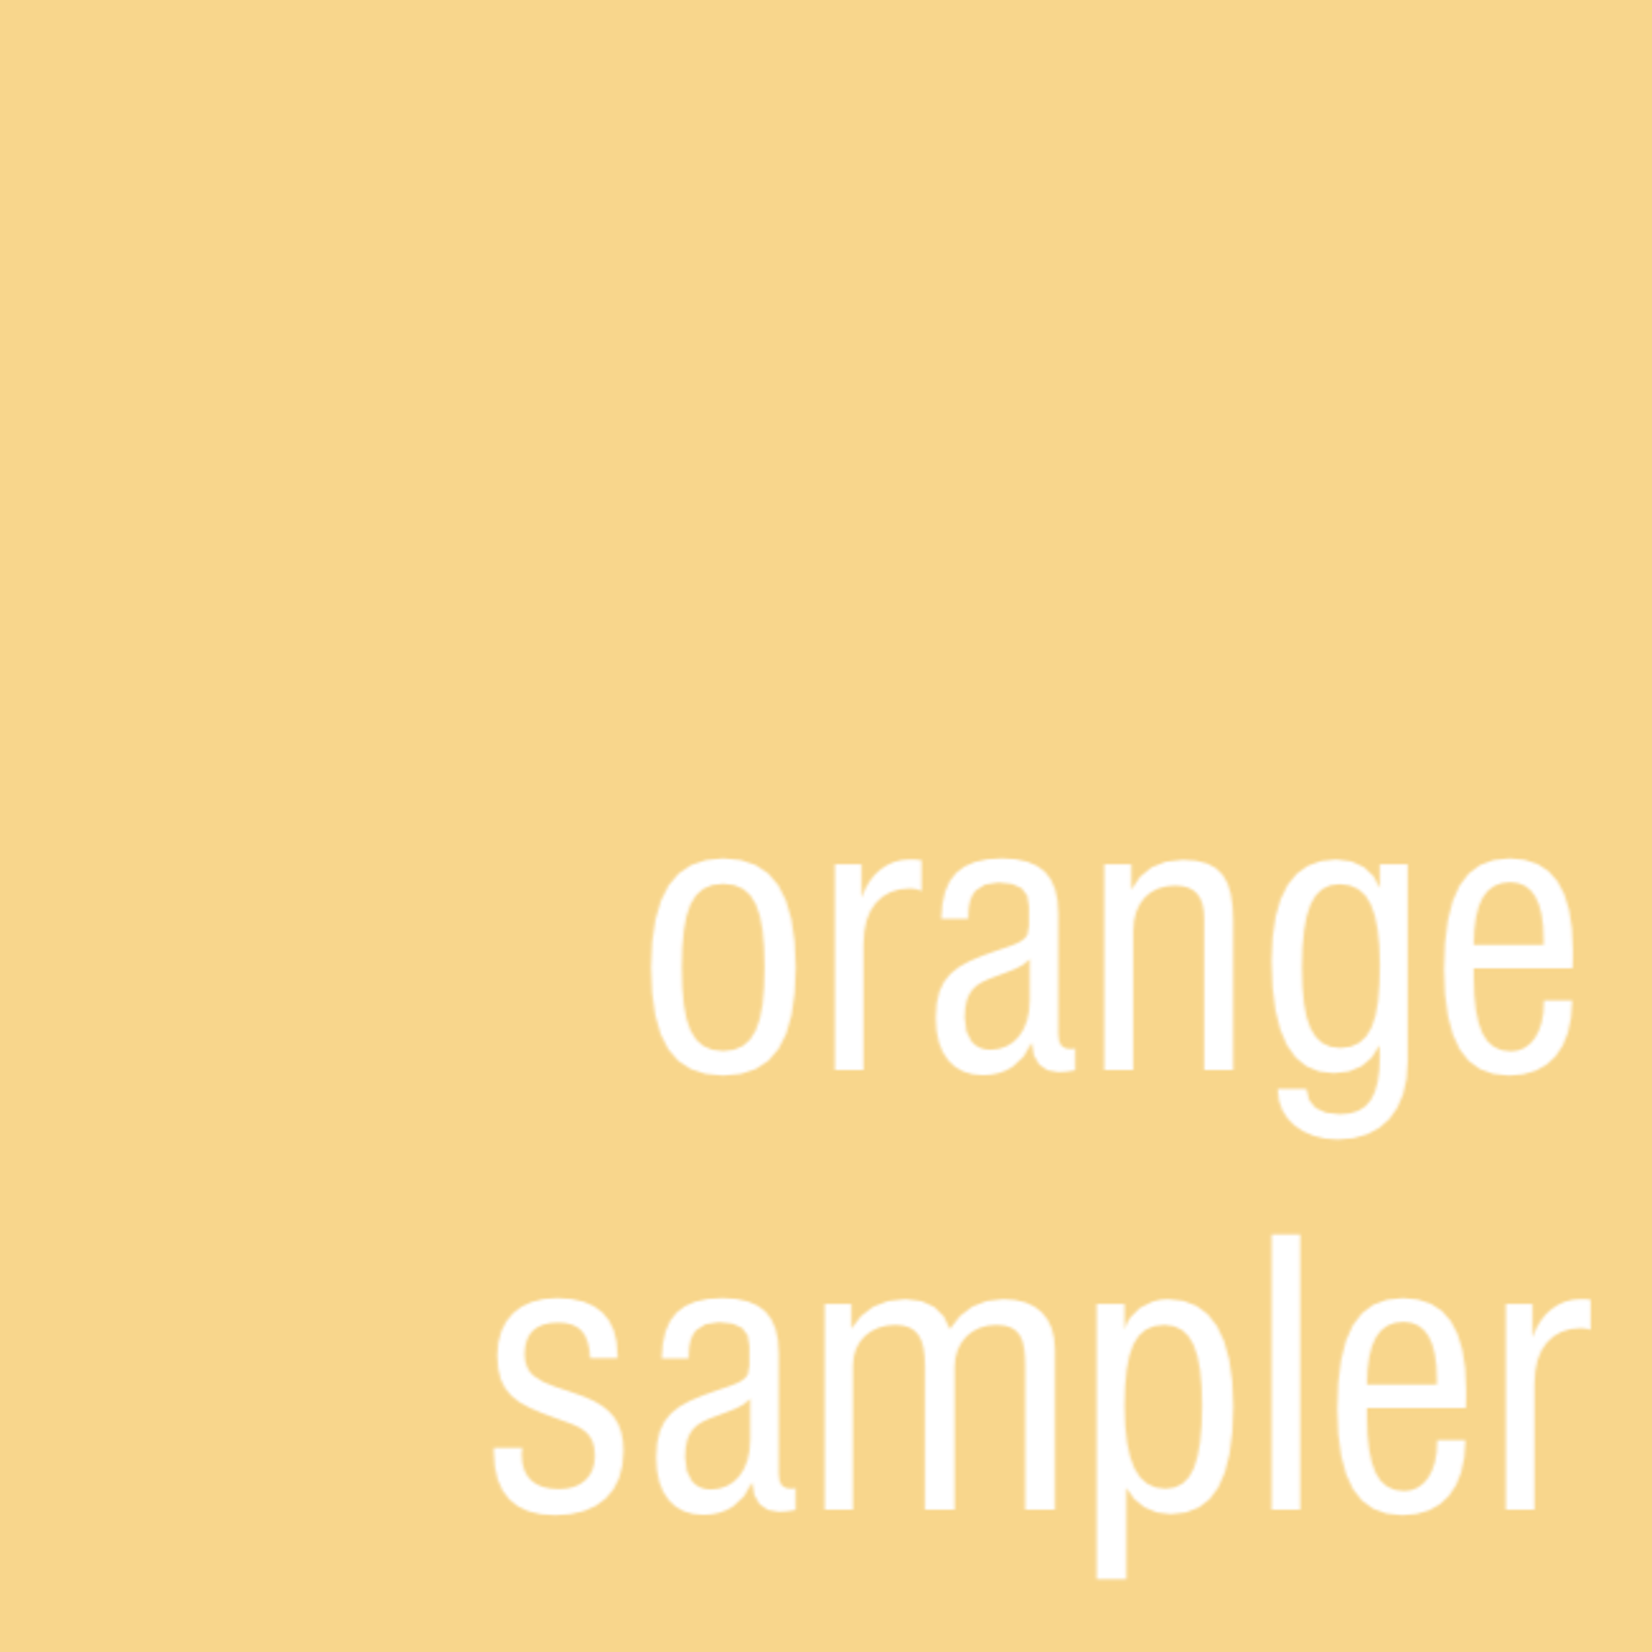 USA Orange Sampler